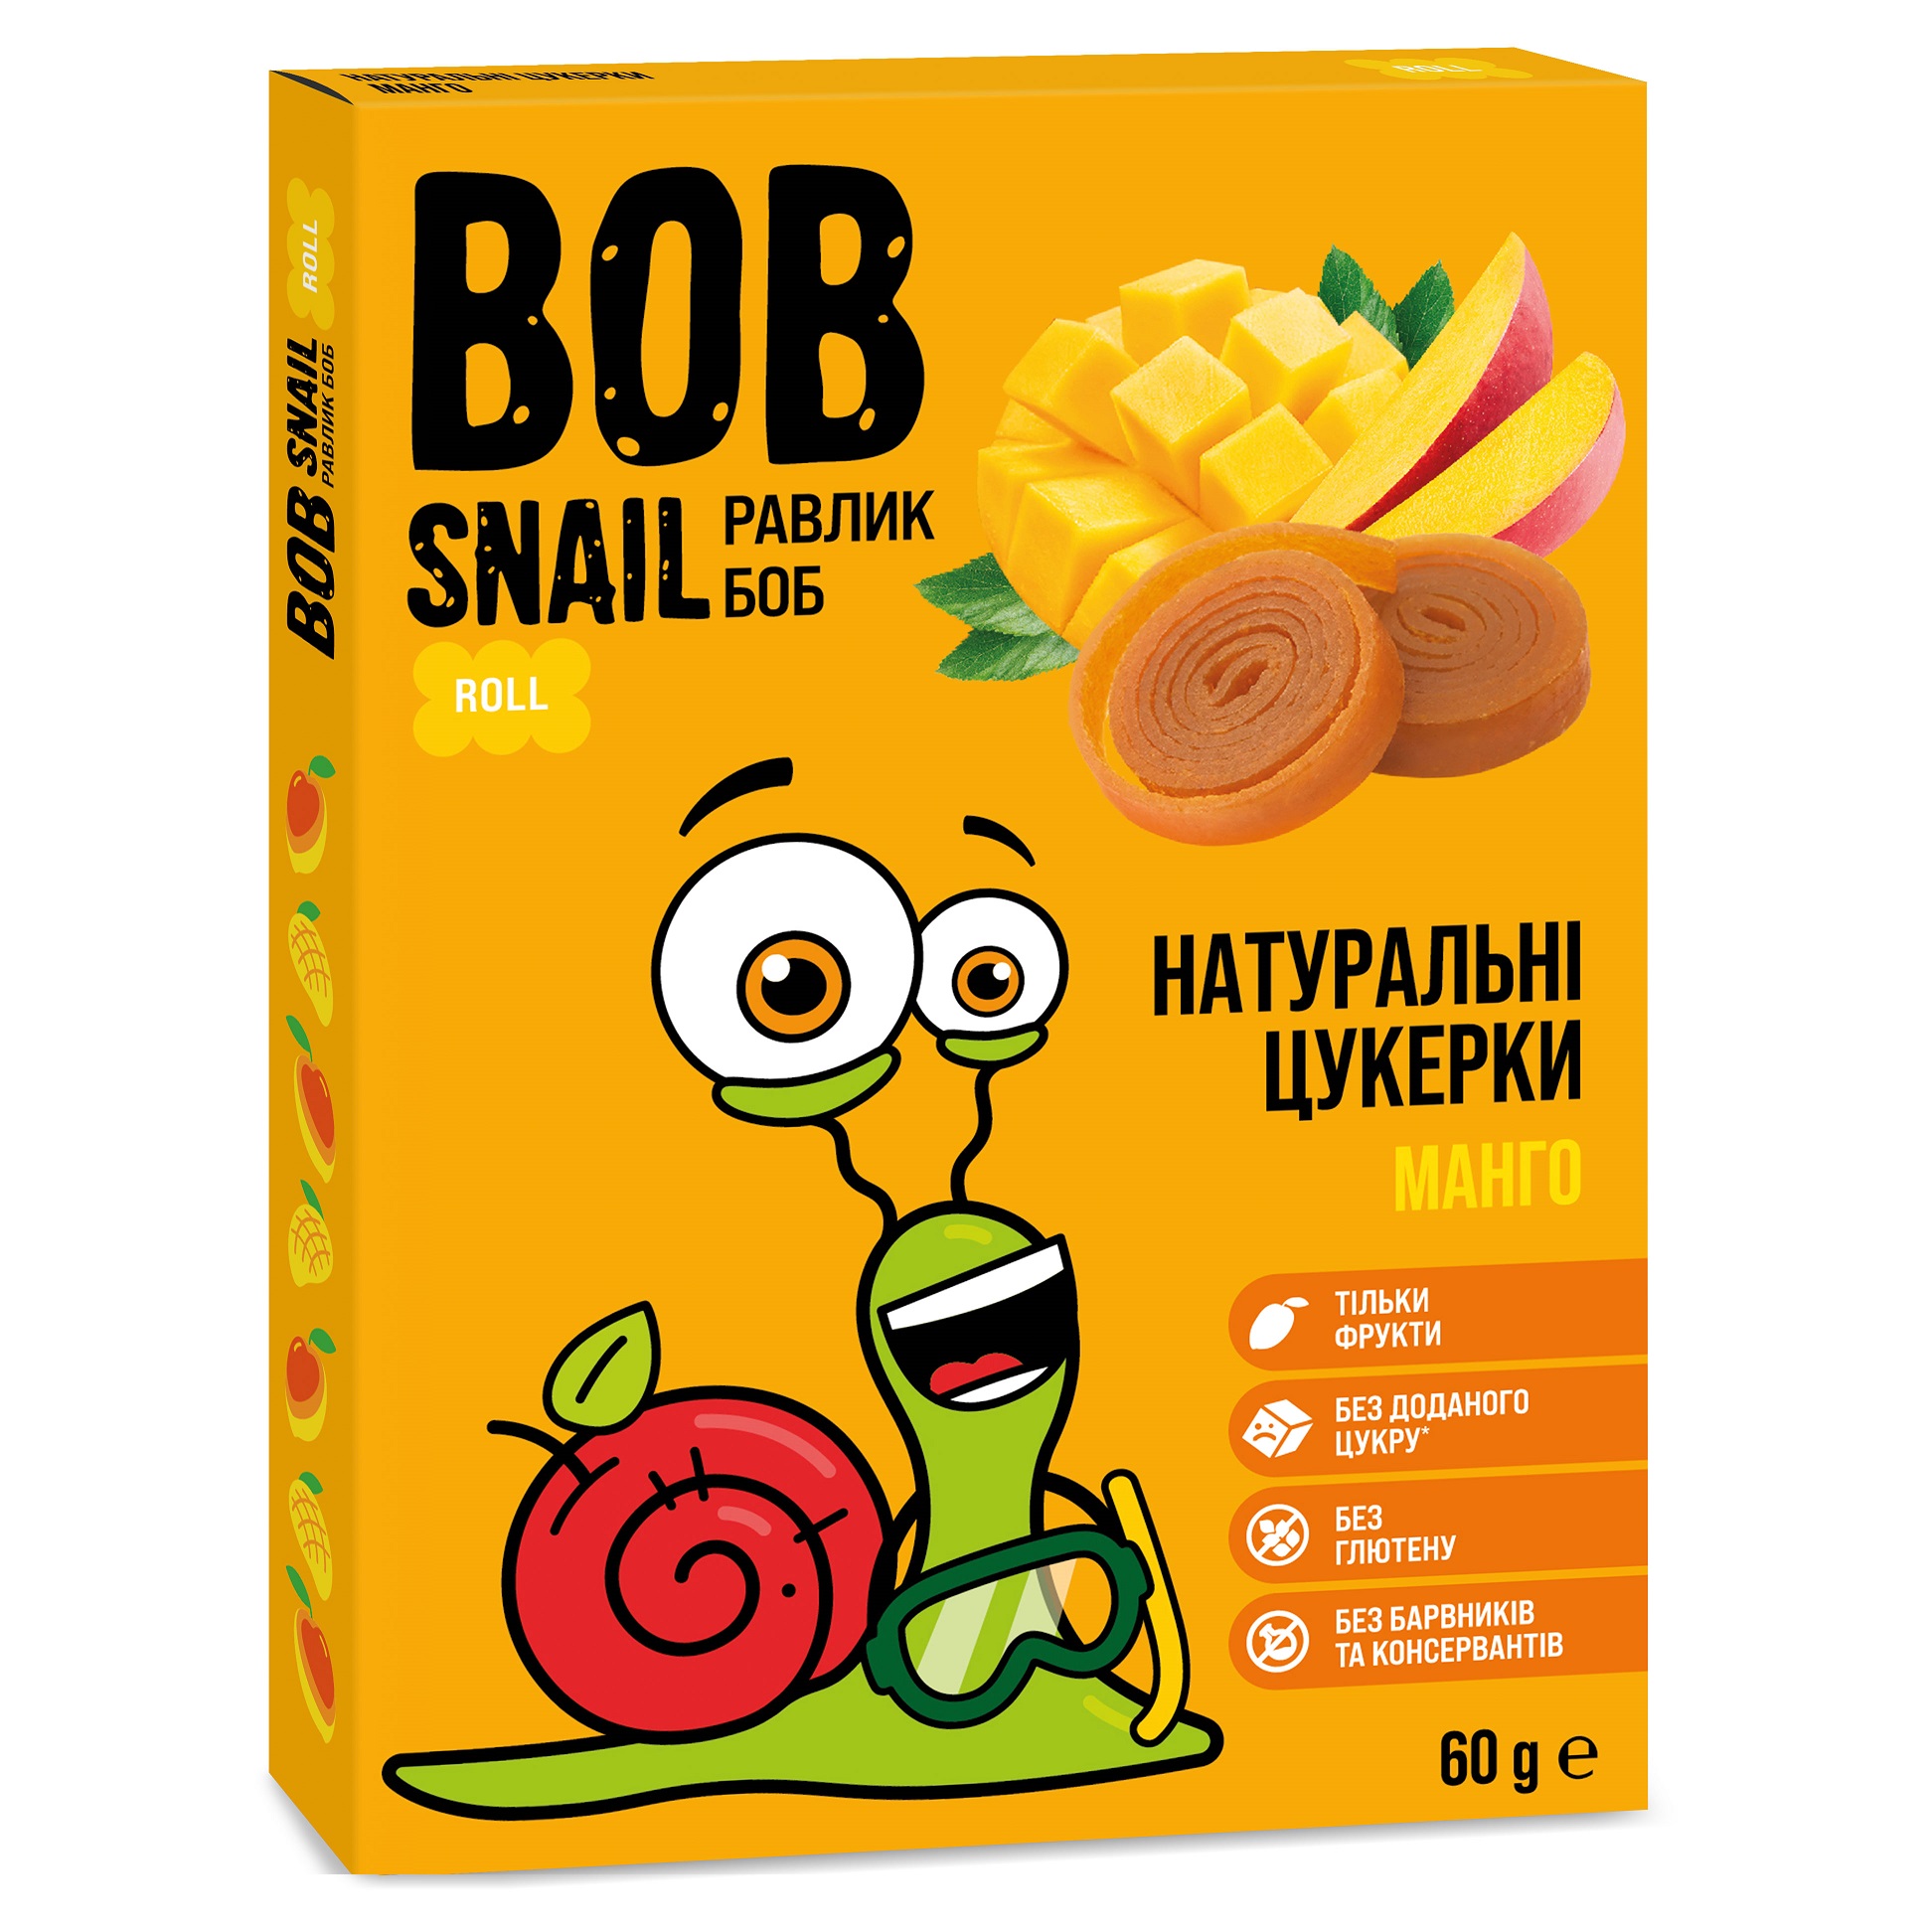 Натуральні цукерки Bob Snail Манго, 60 г - фото 1